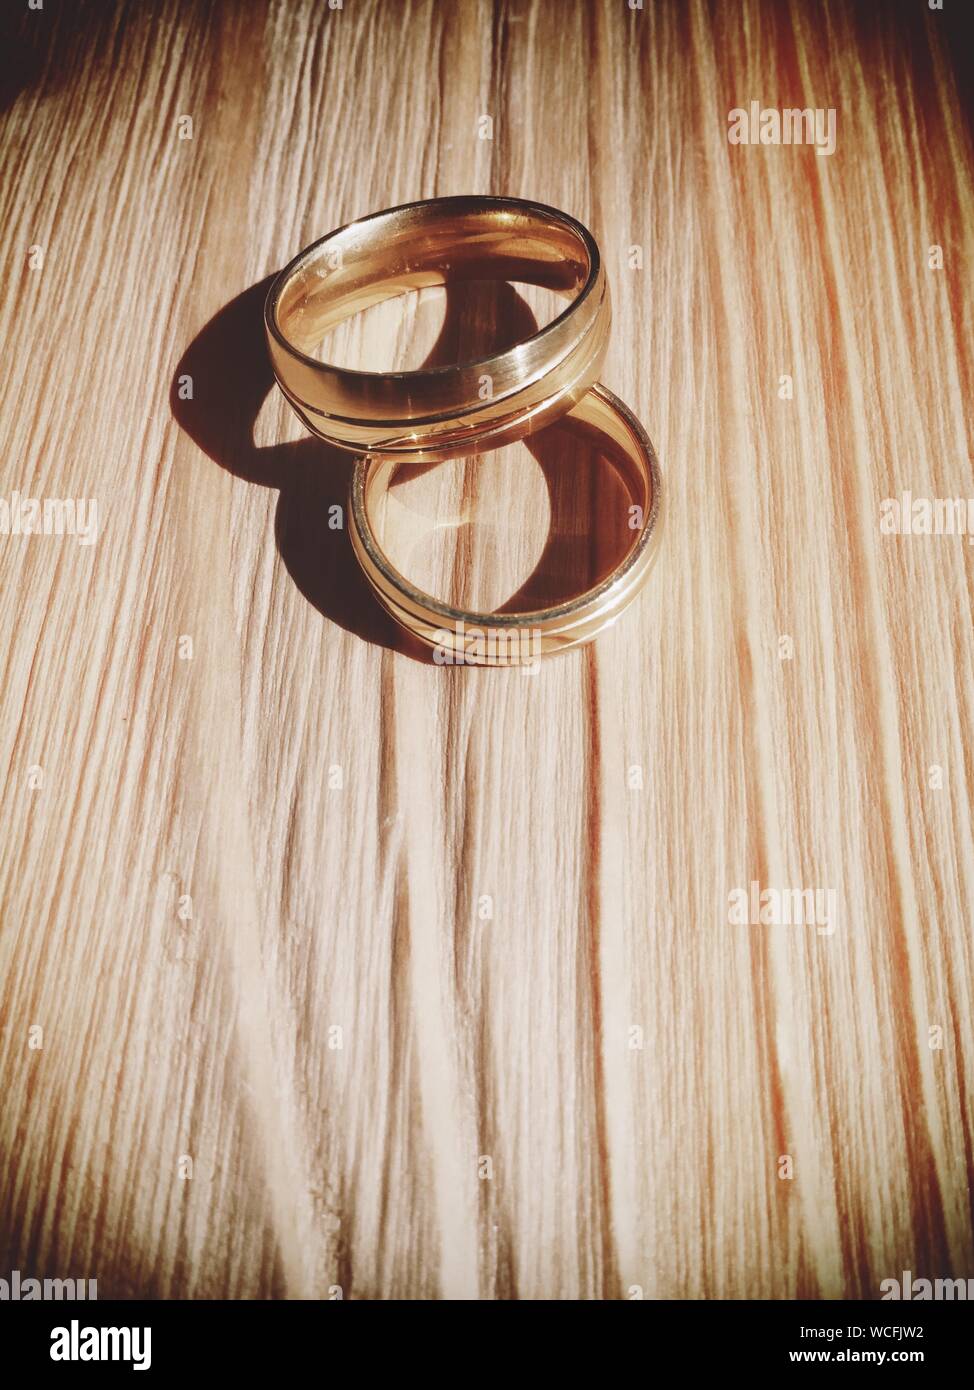 Los anillos de boda Sobre la plancha de madera. Foto de stock